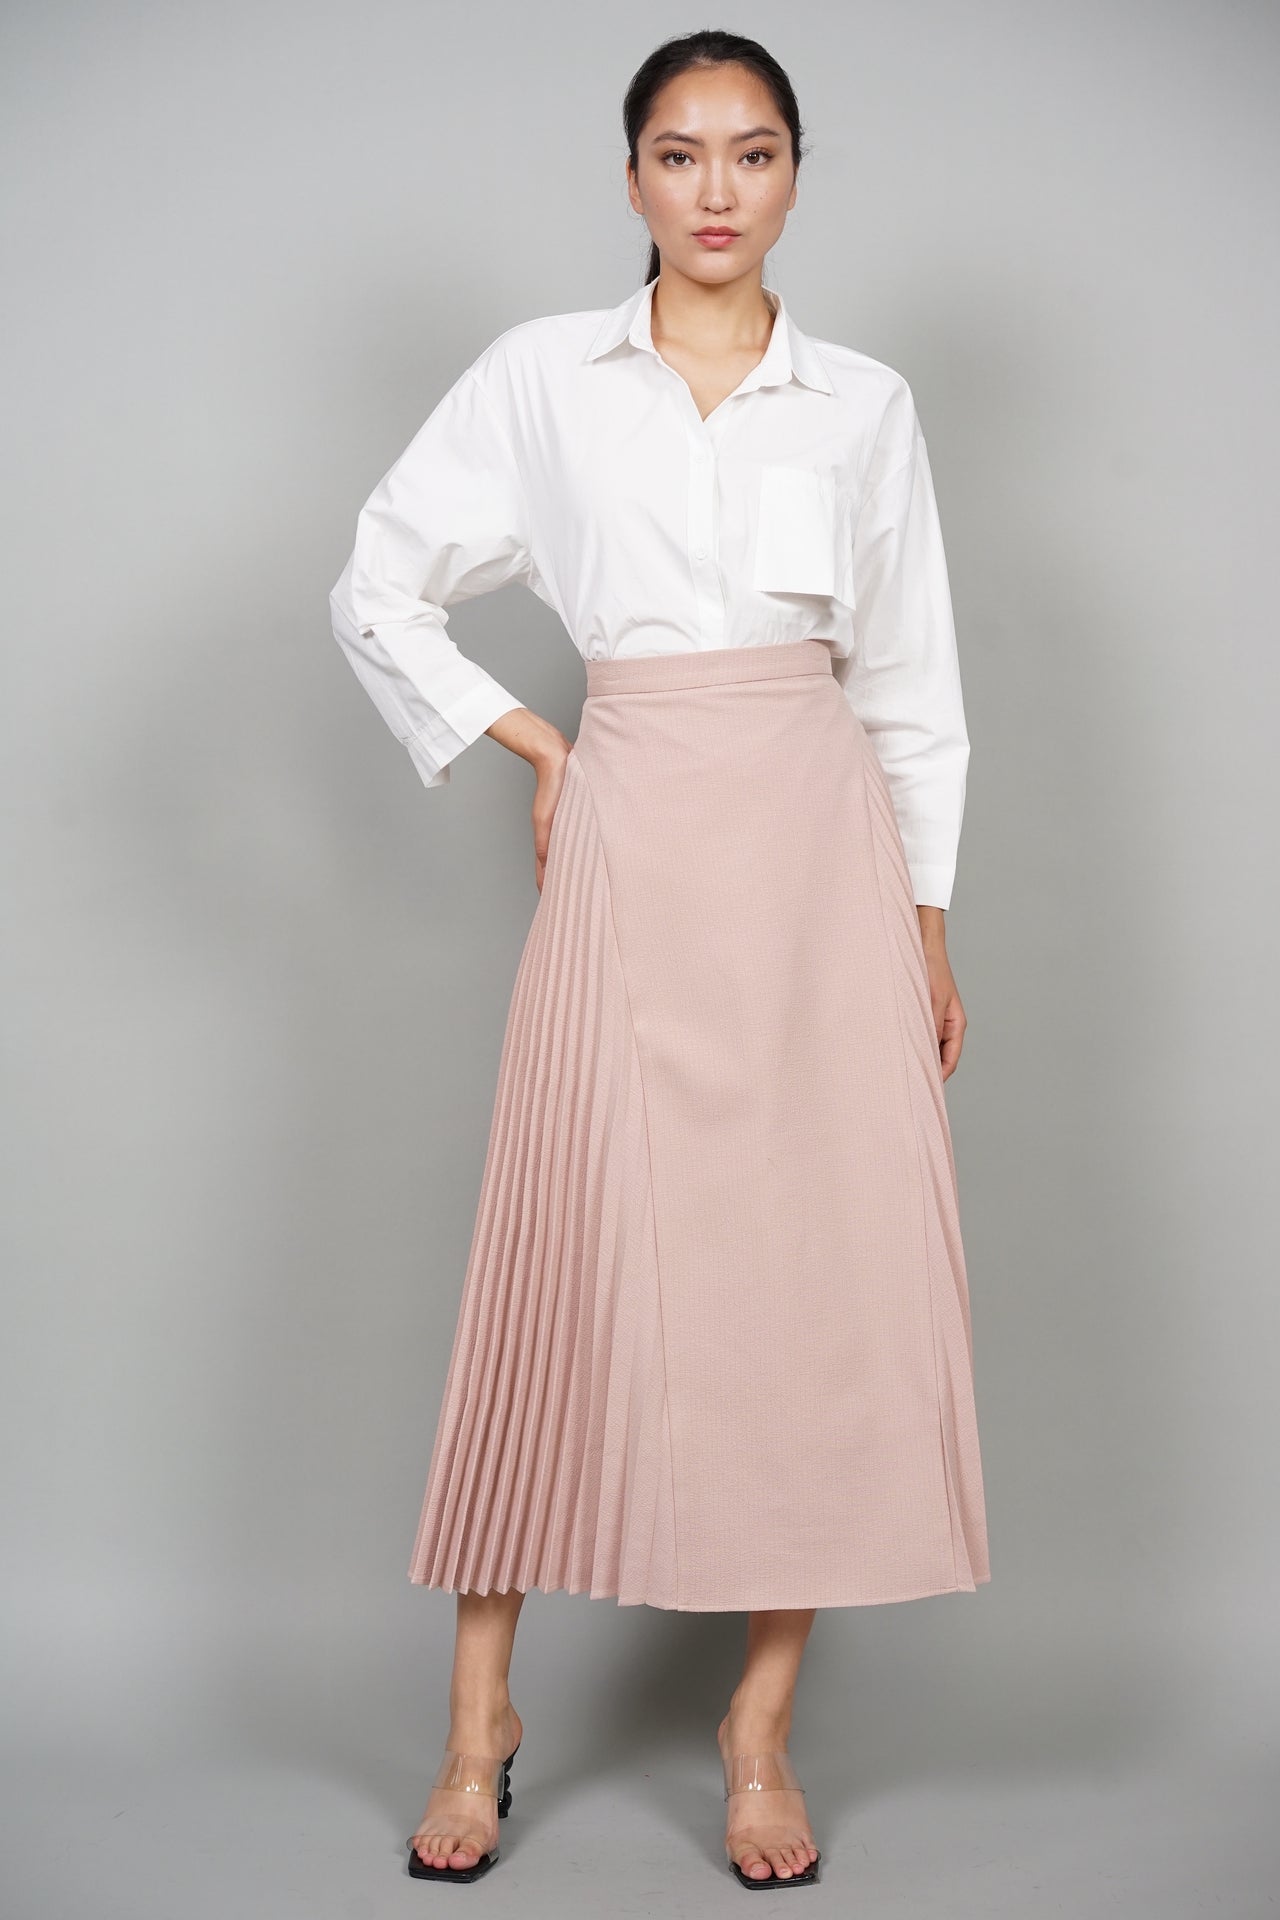 Fredi Pleated Skirt in Khaki